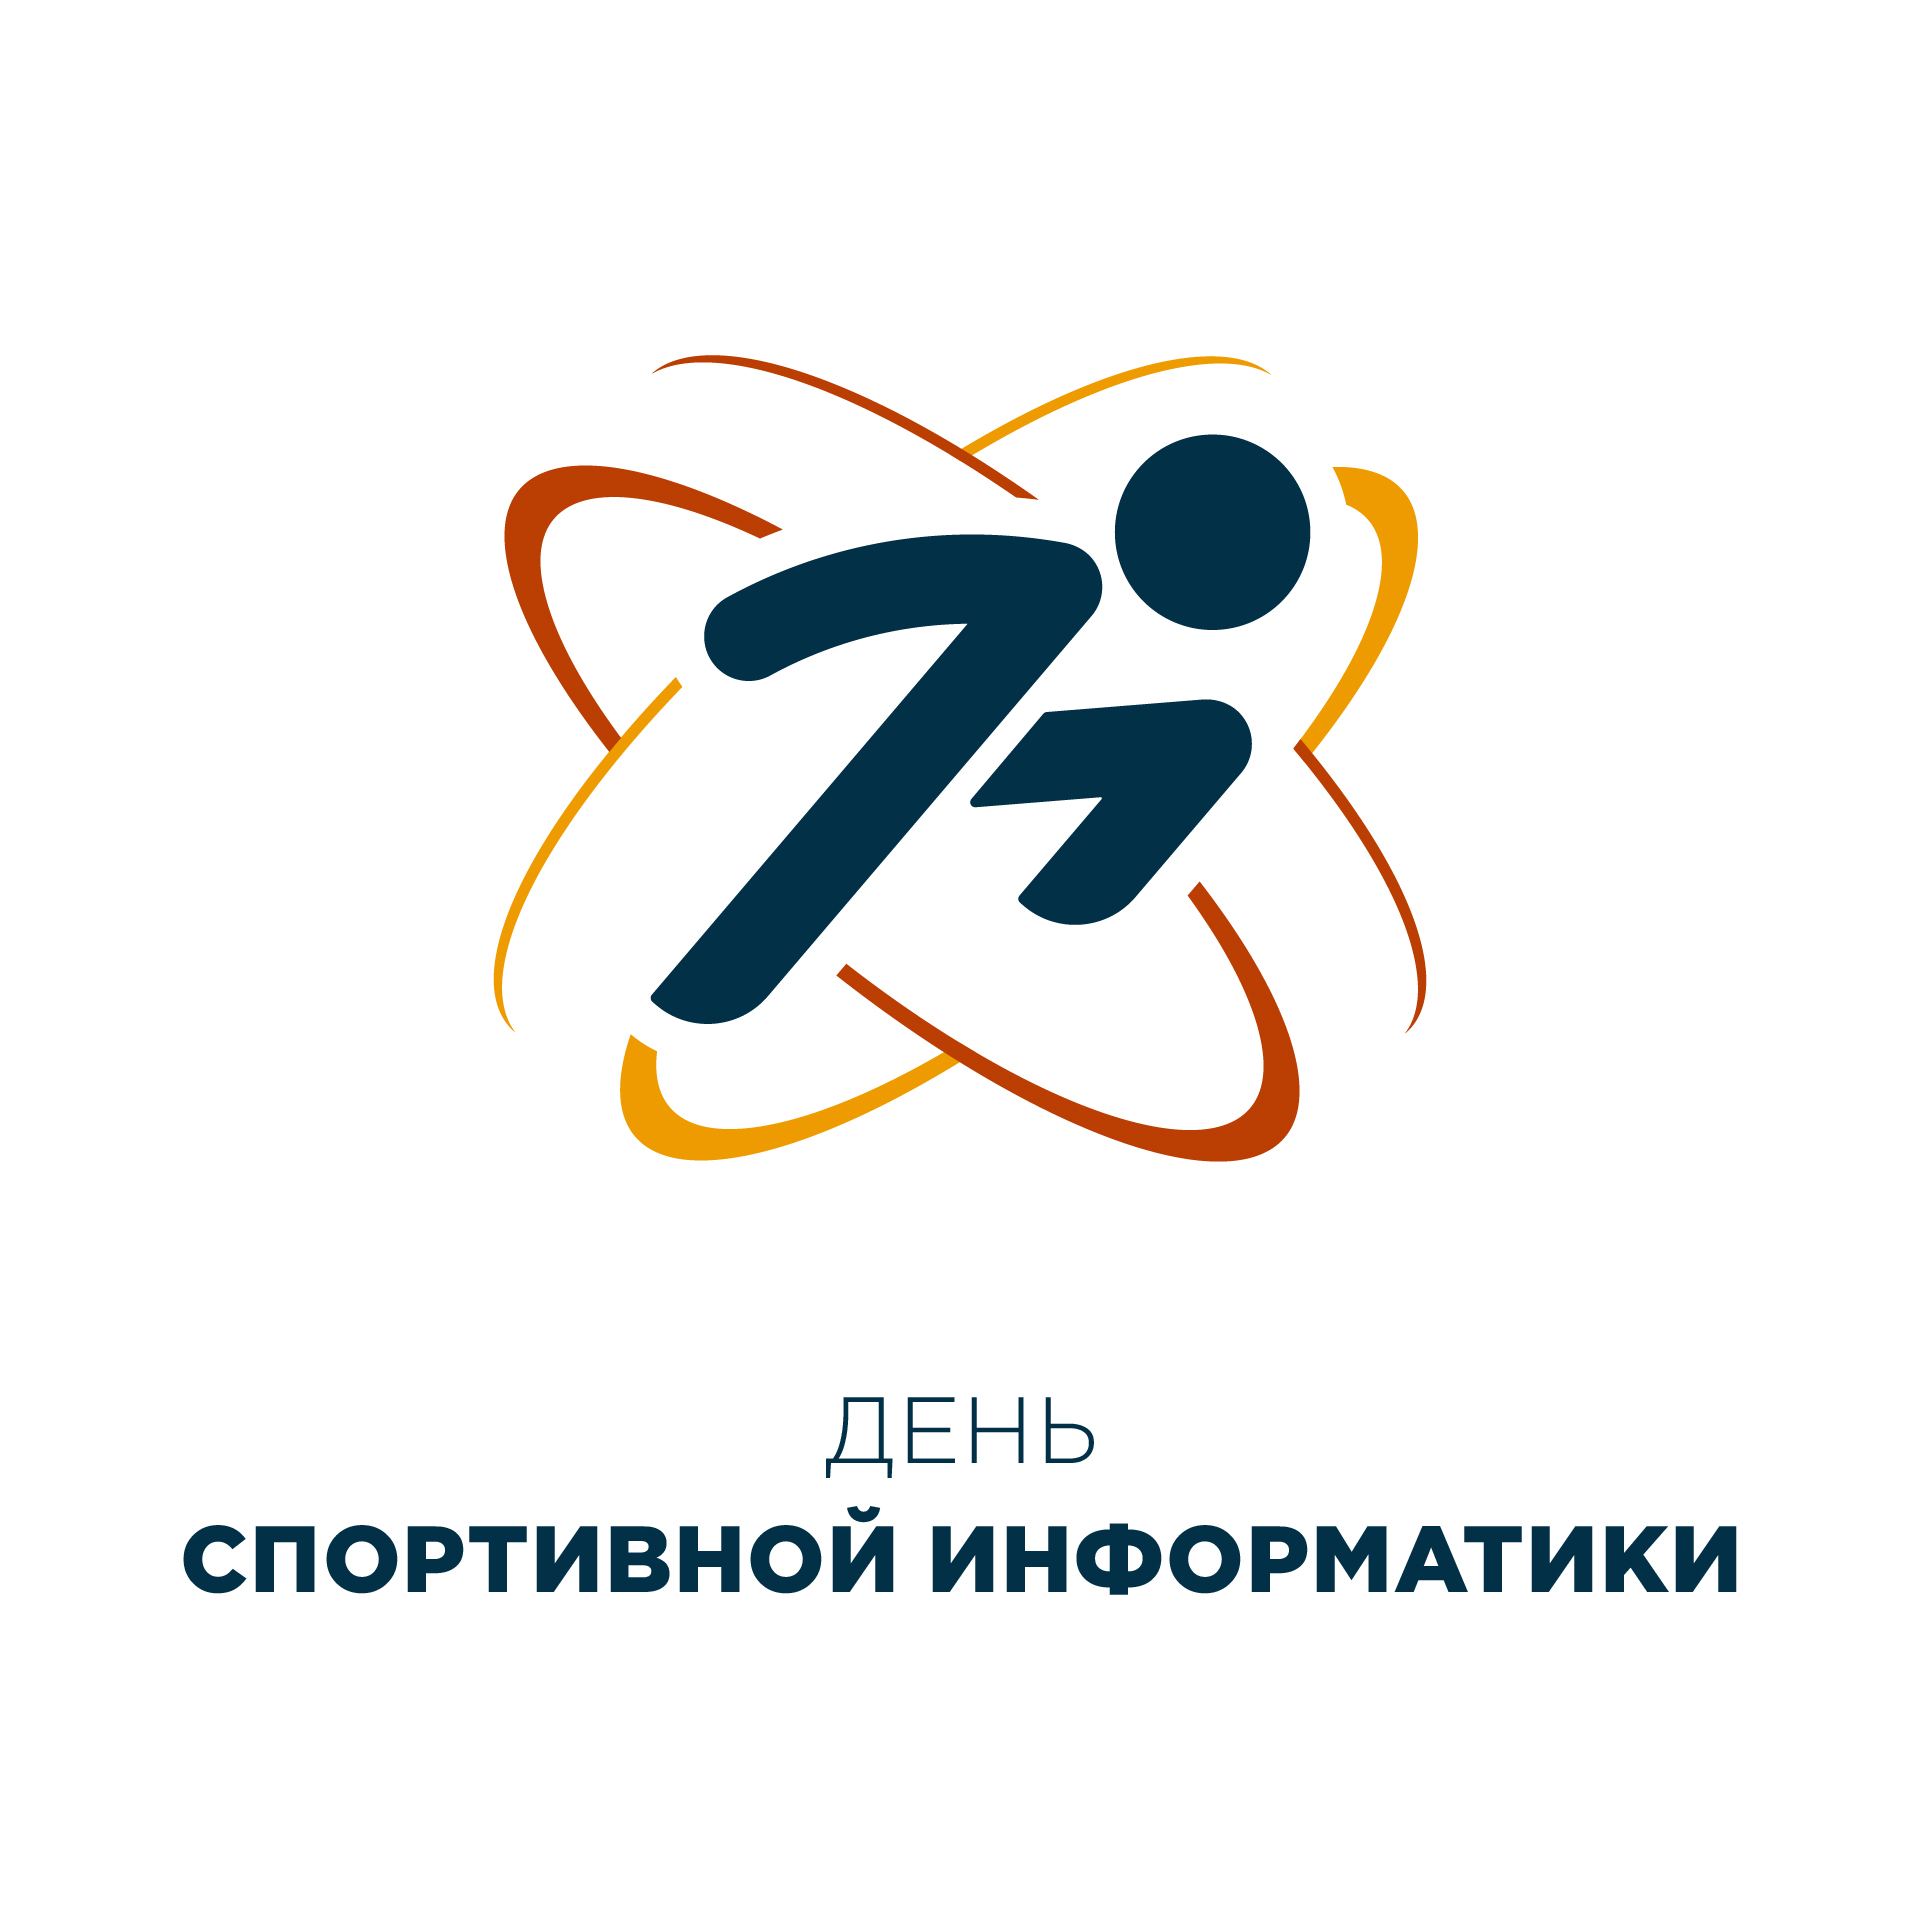             VII Всероссийкая с международным участием научно-практическая конференция 